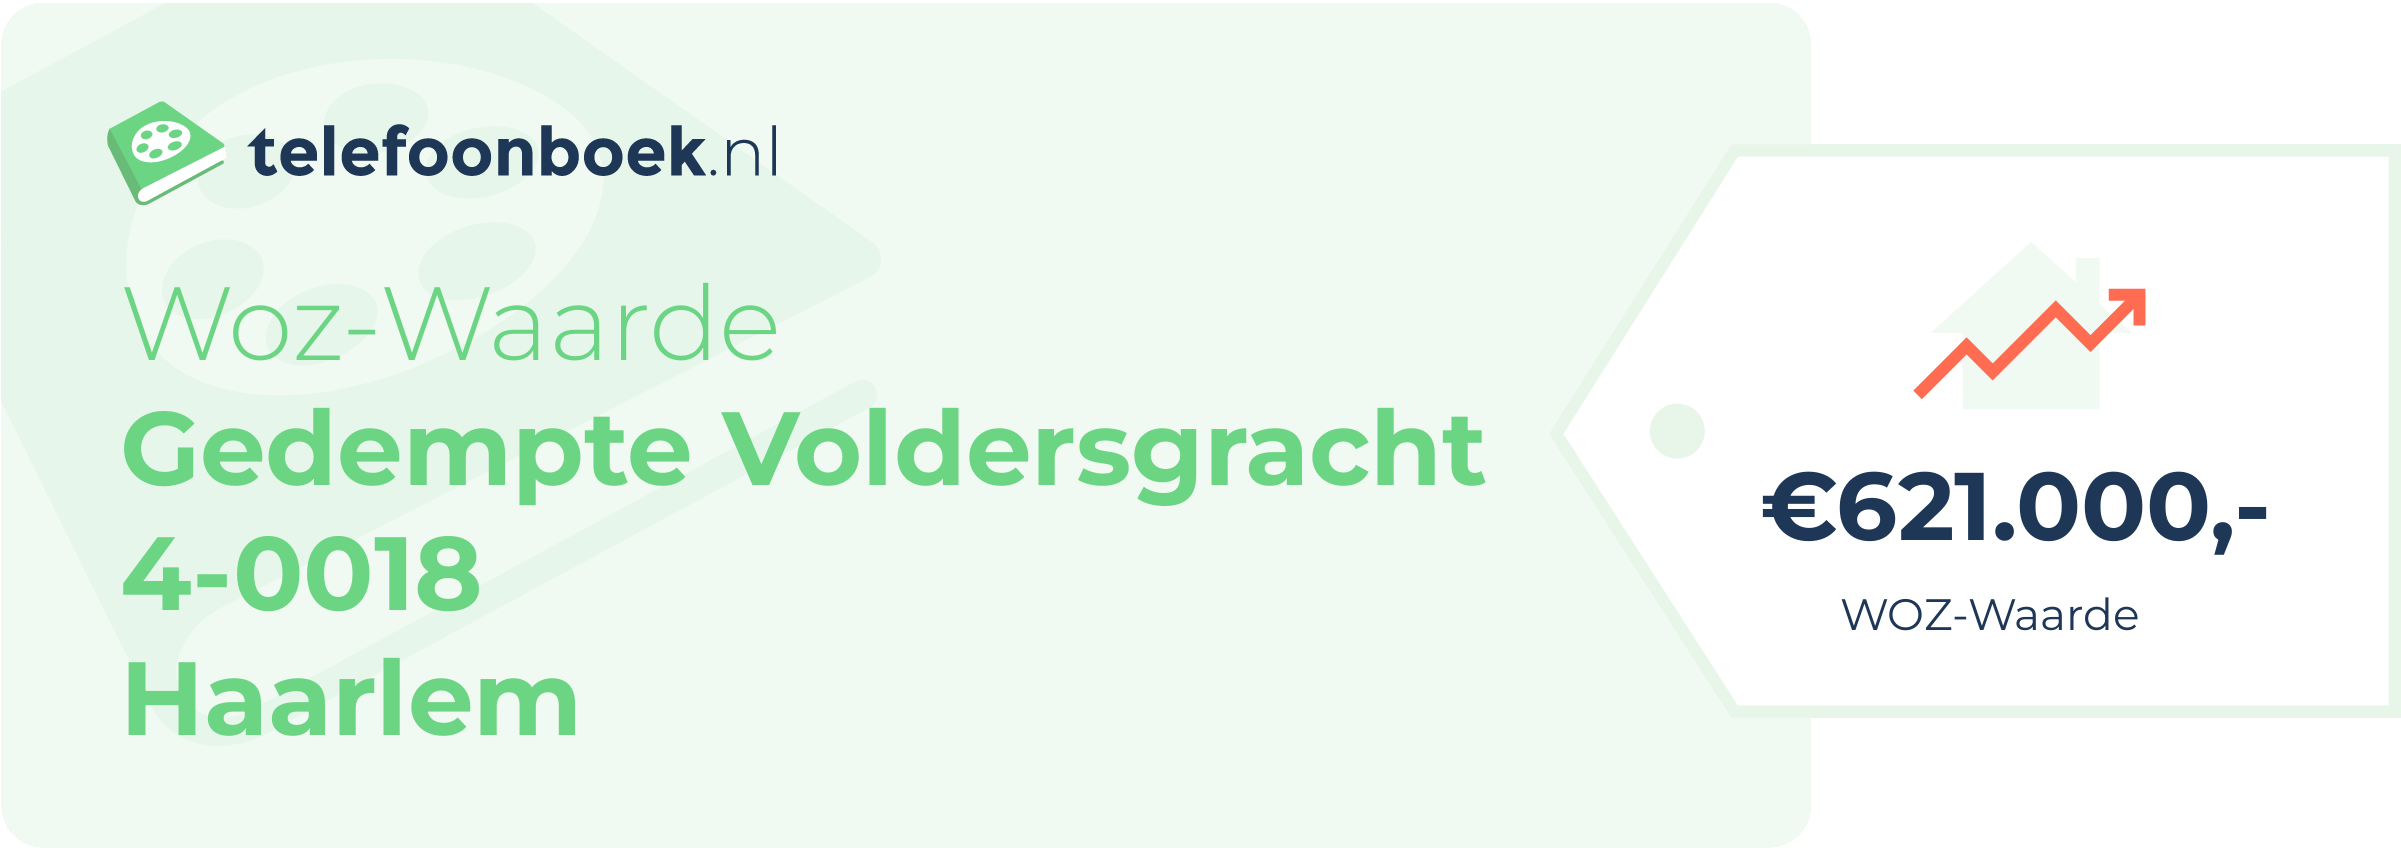 WOZ-waarde Gedempte Voldersgracht 4-0018 Haarlem